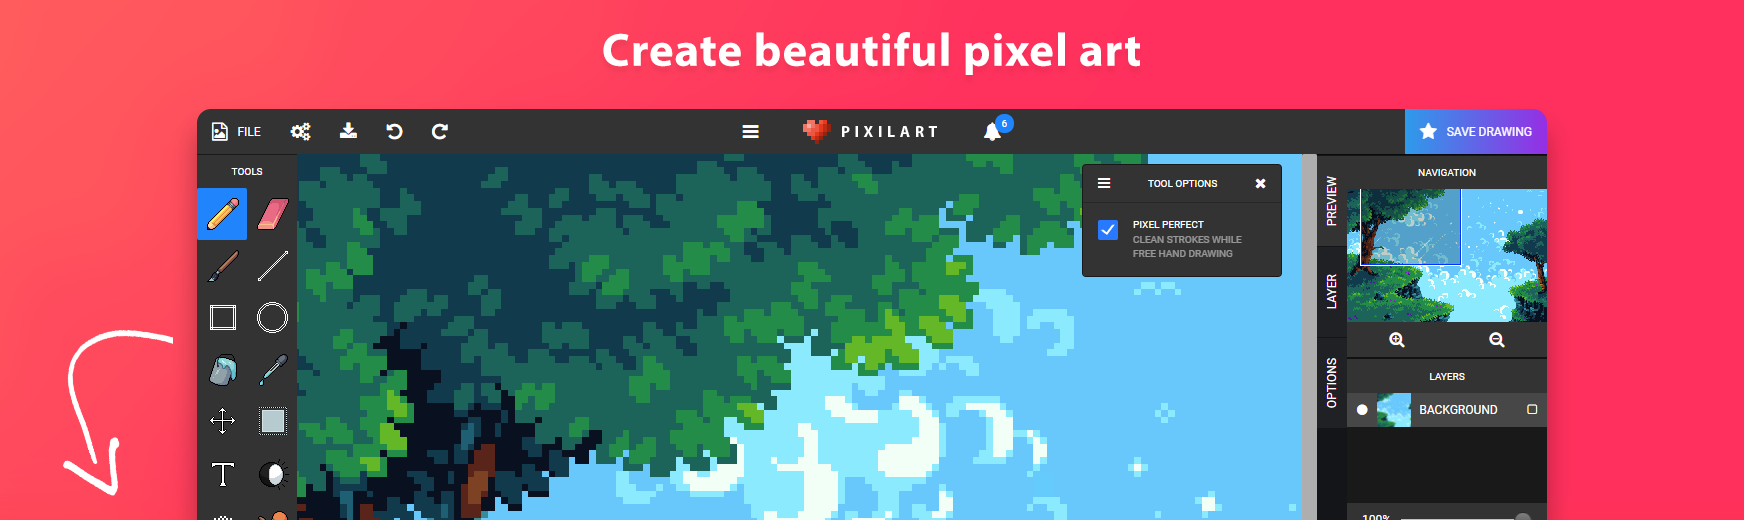 Editing For kleki - Free online pixel art drawing tool - Pixilart